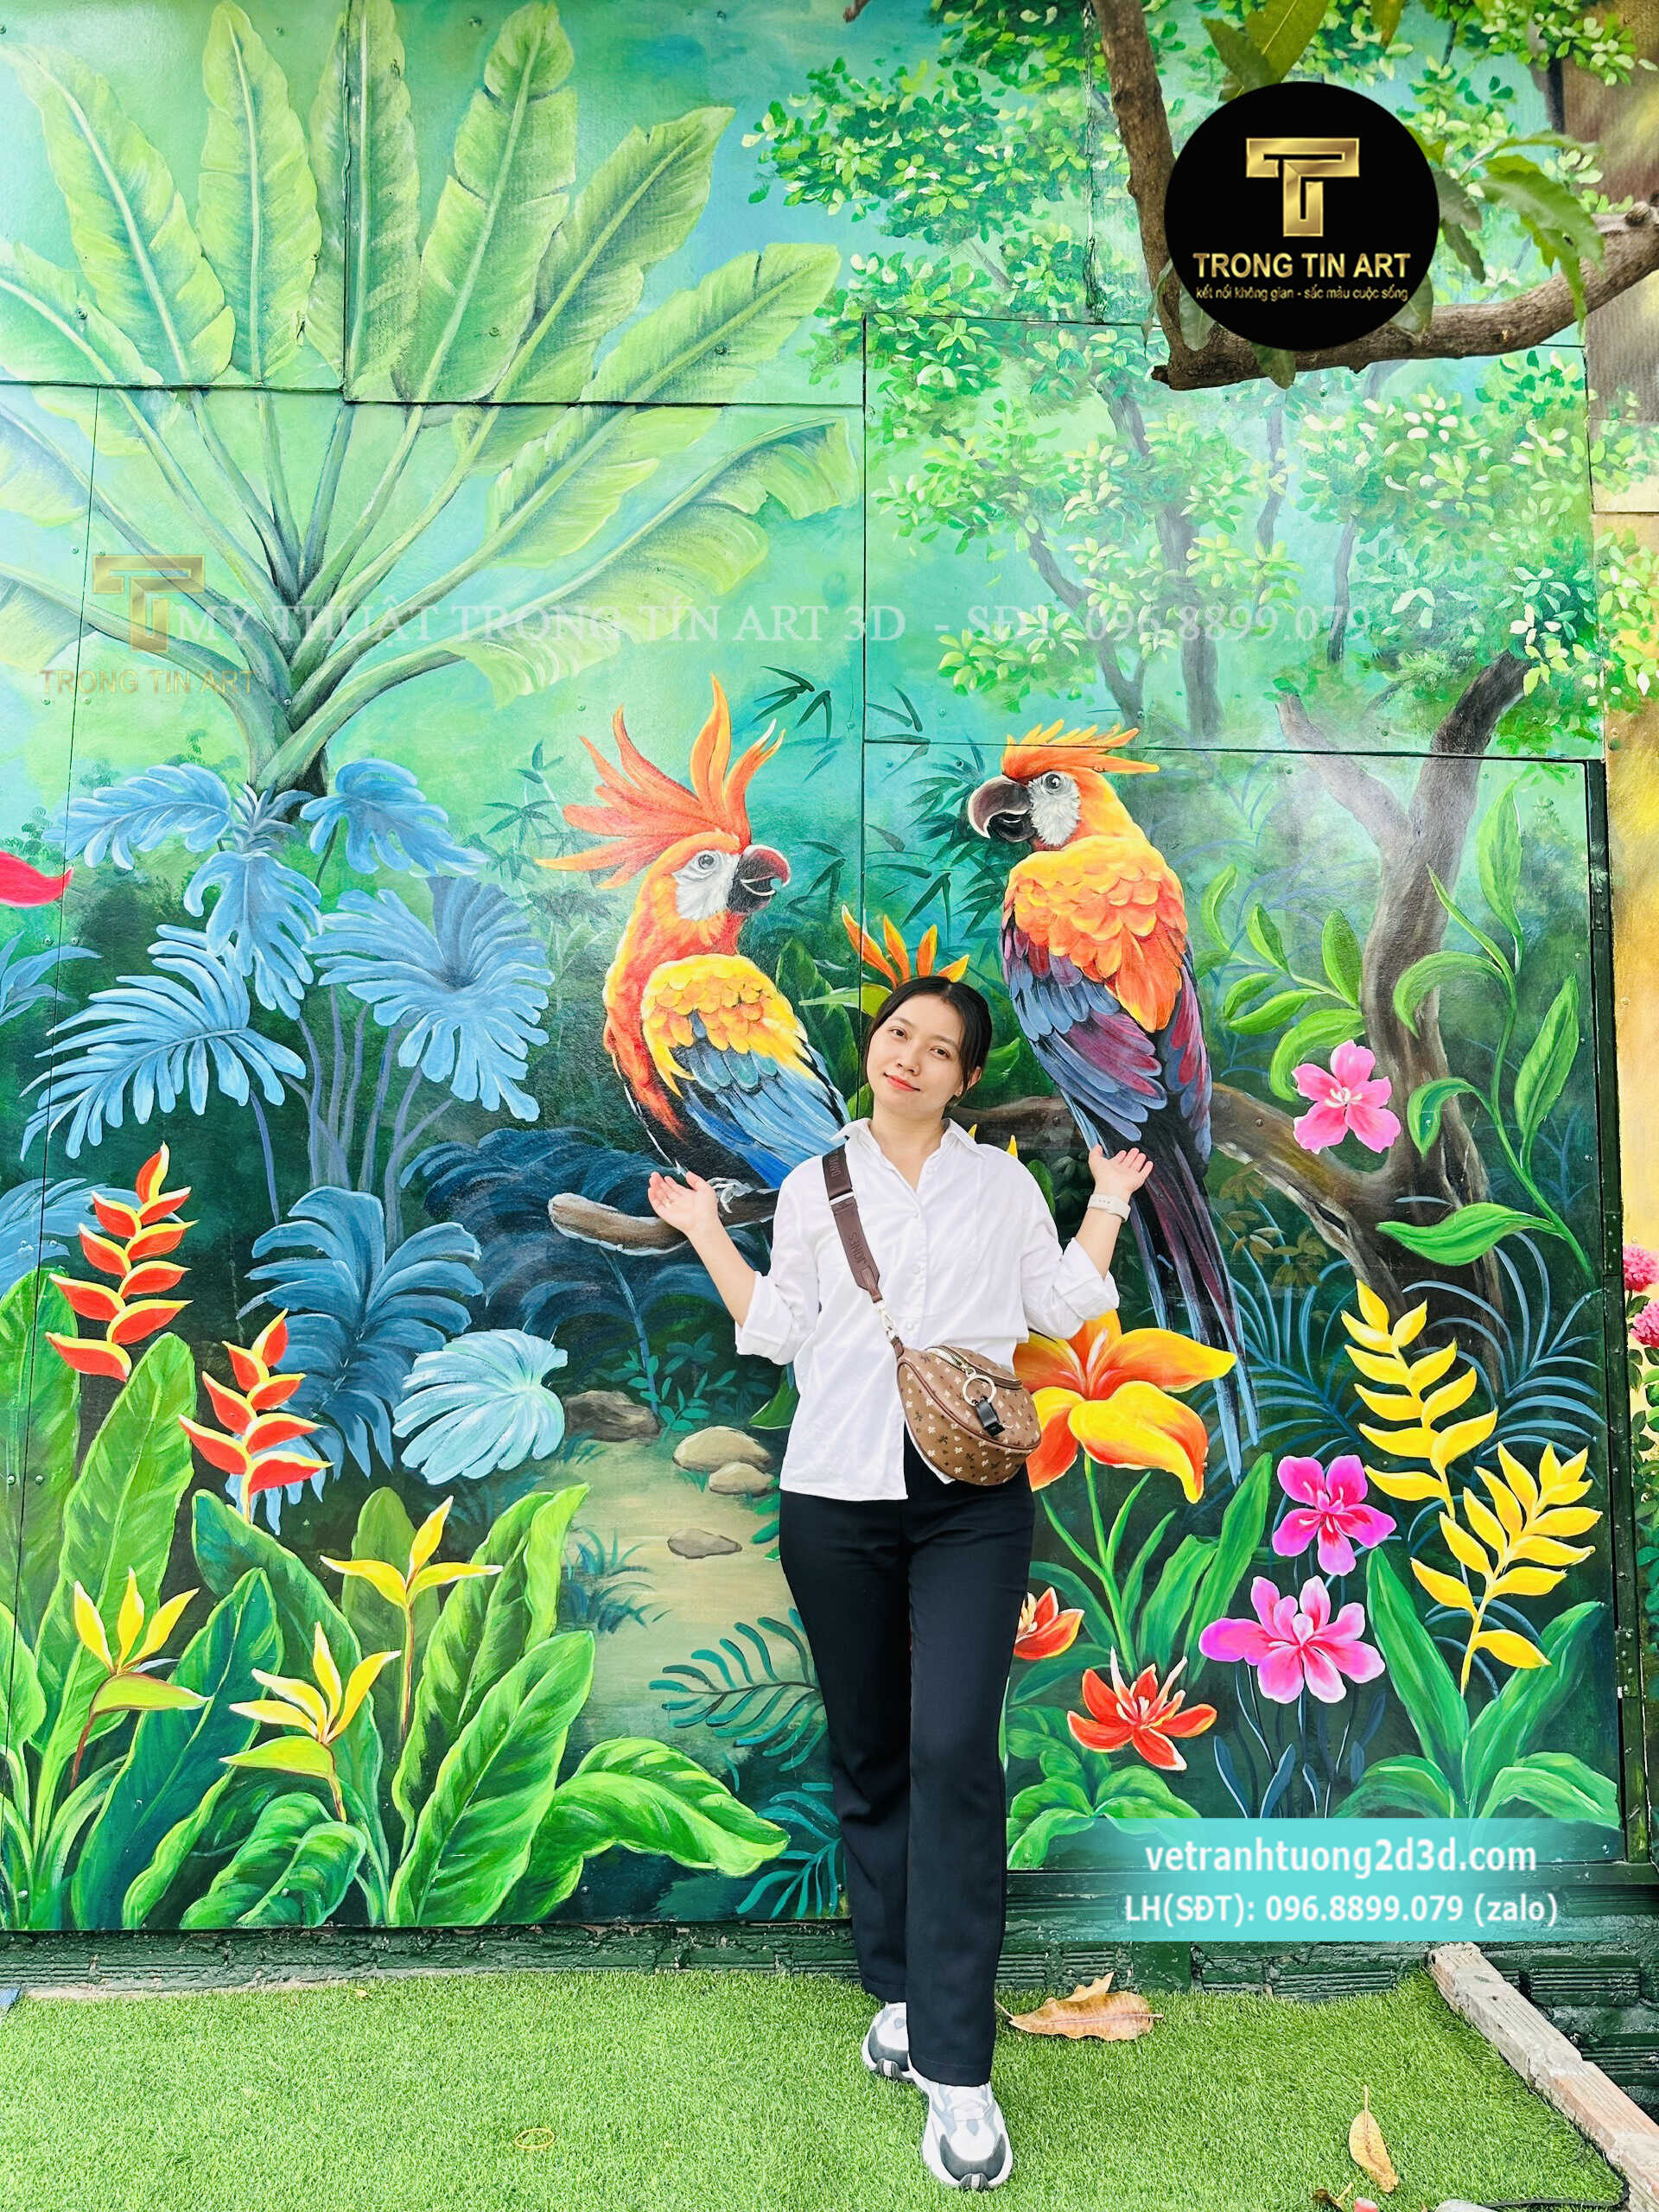 Vẽ Tranh Tường 3D Chekin,tranh chụp hình chekin,vẽ tranh cửa cuốn,vẽ tranh hoa lá,tranh tropical,tranh rừng nhiệt đới,vẽ tranh 3d